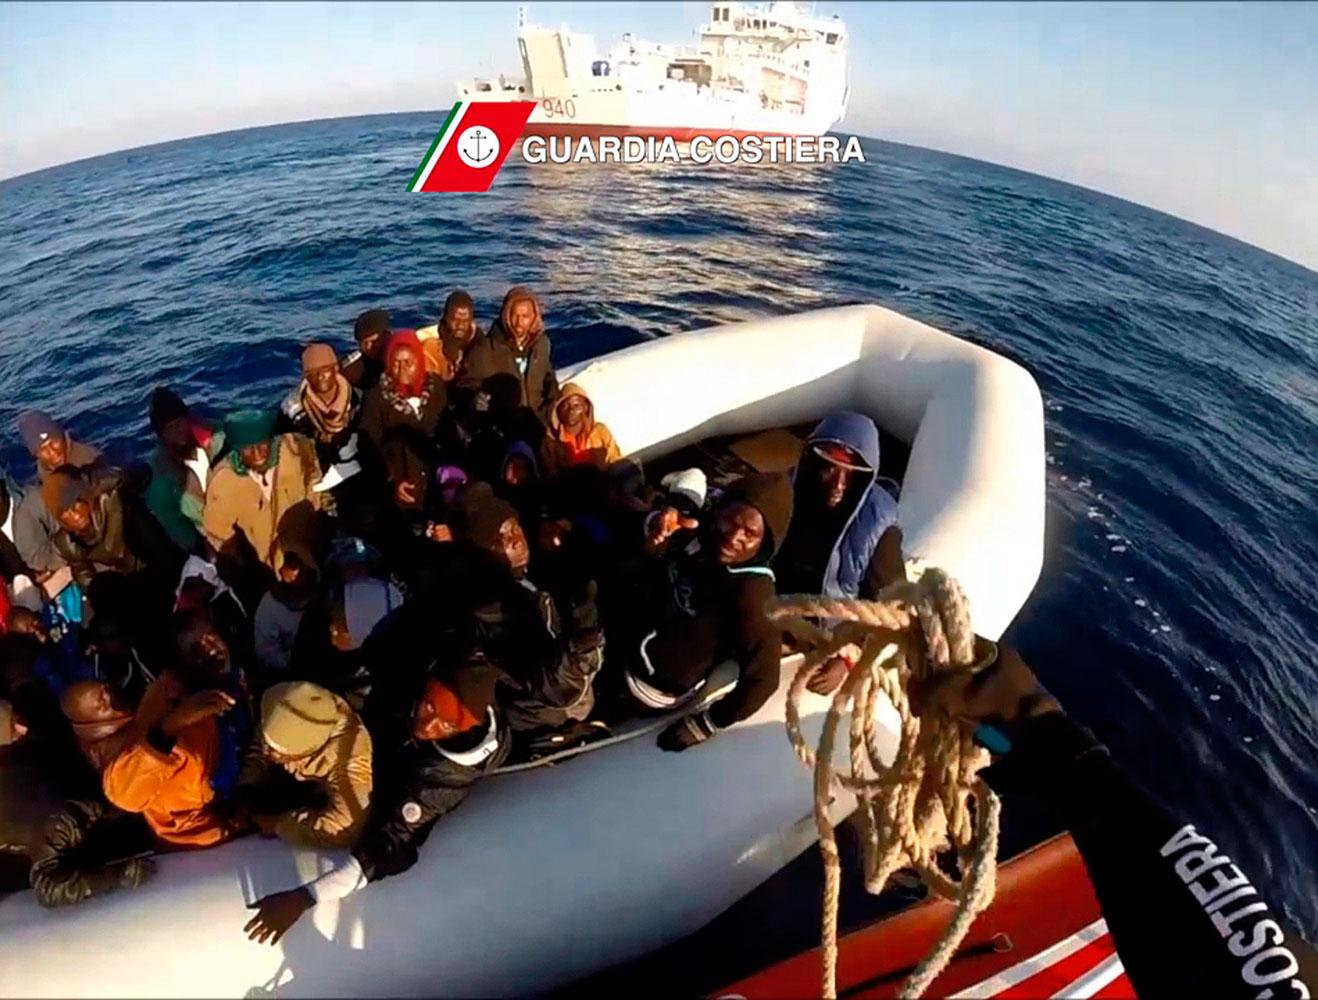 Båt från italienska kustbevakningen plockar upp båtflyktingar i sjönöd inom ramen för Frontex projekt Triton.